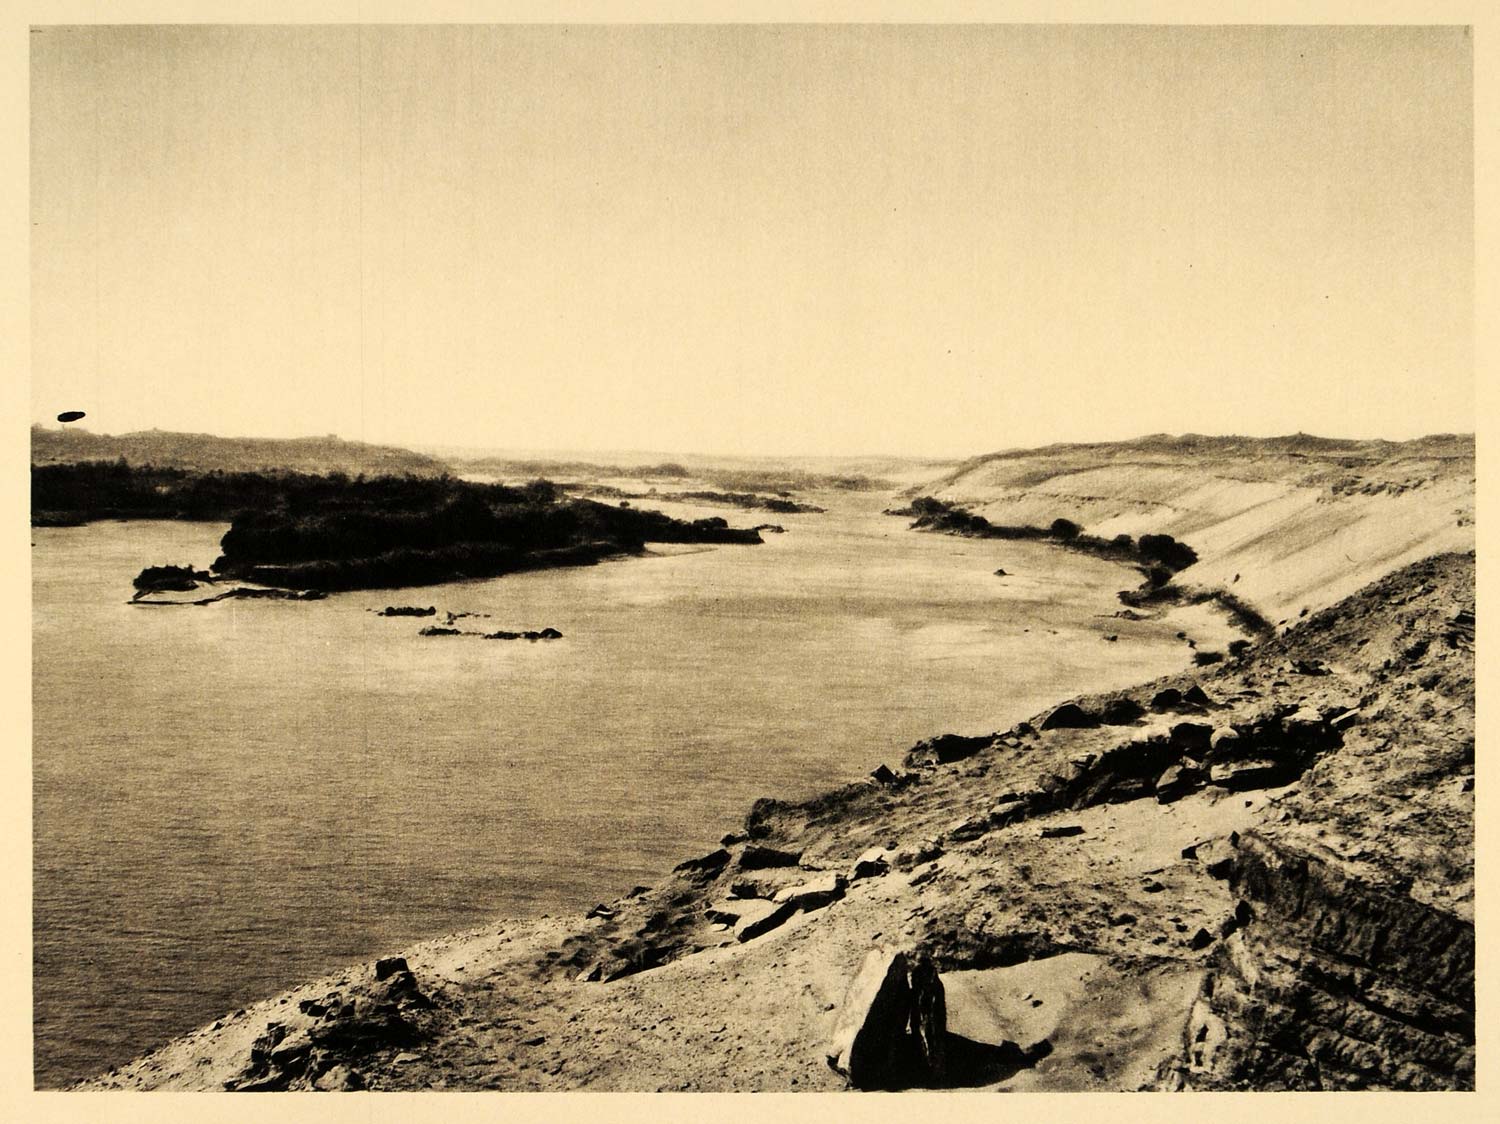 1929 Egypt Kitchener's Island Aswan Nile River Egypt Photogravure Herbert EG1